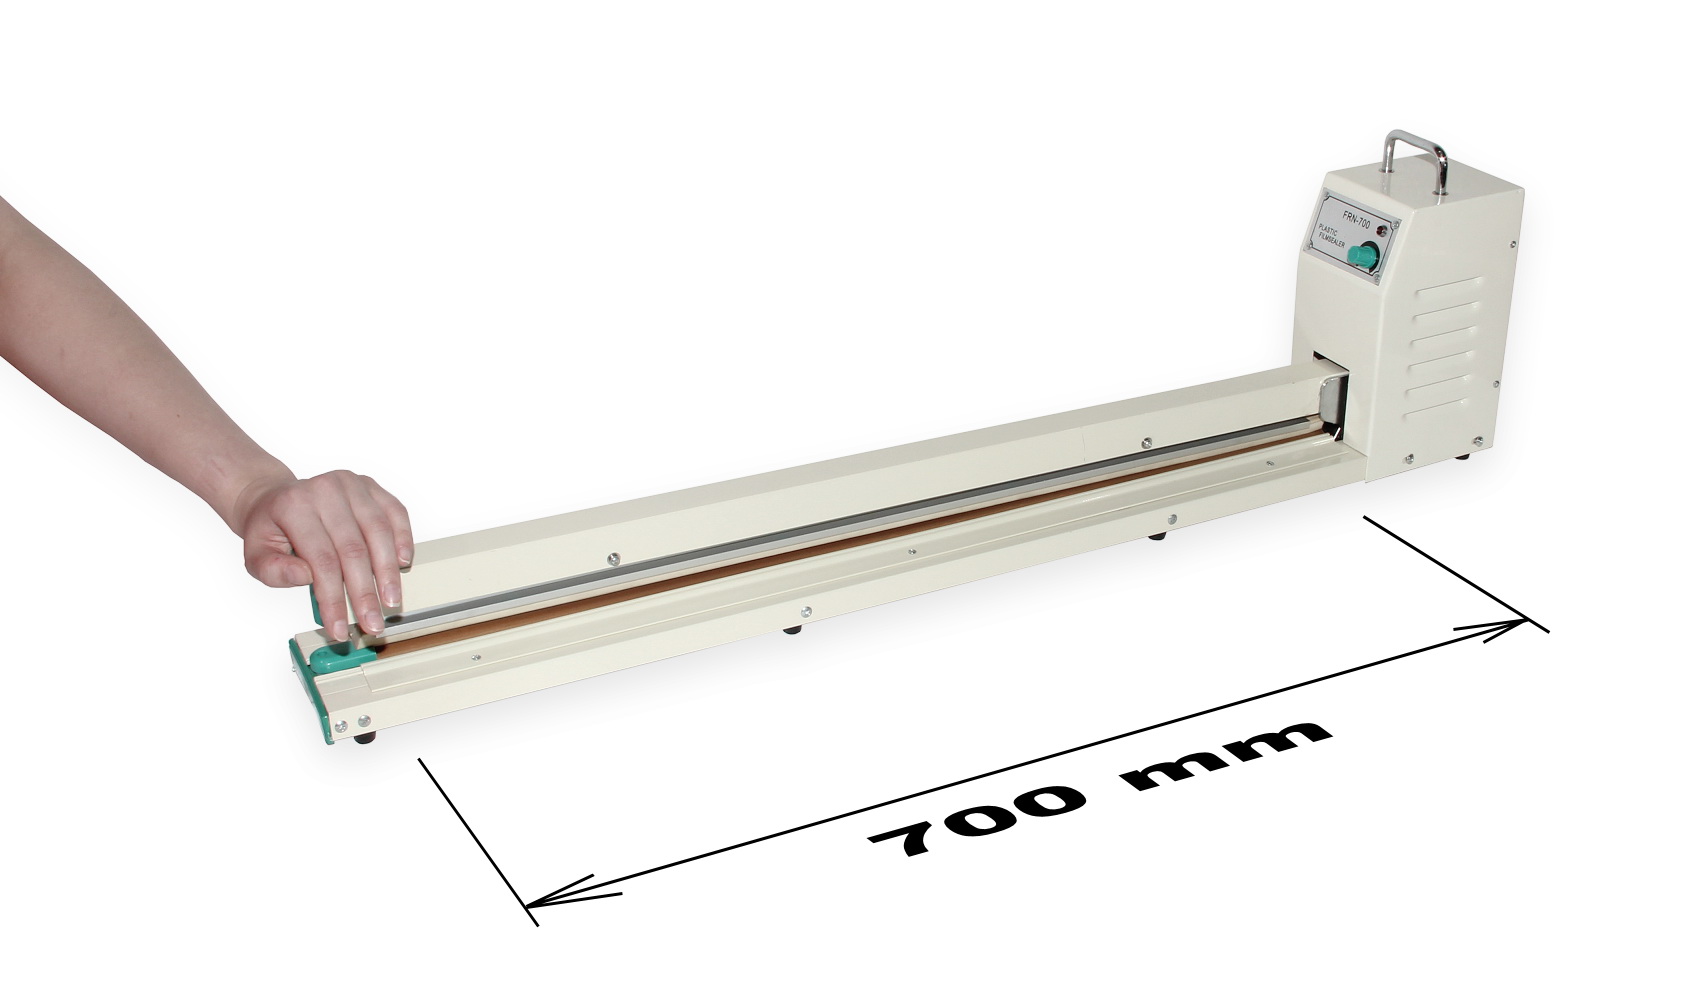 Páková svářečka fólií pro zatavování plastů FRN-700 se svářecí lištou o šířce 700 mm